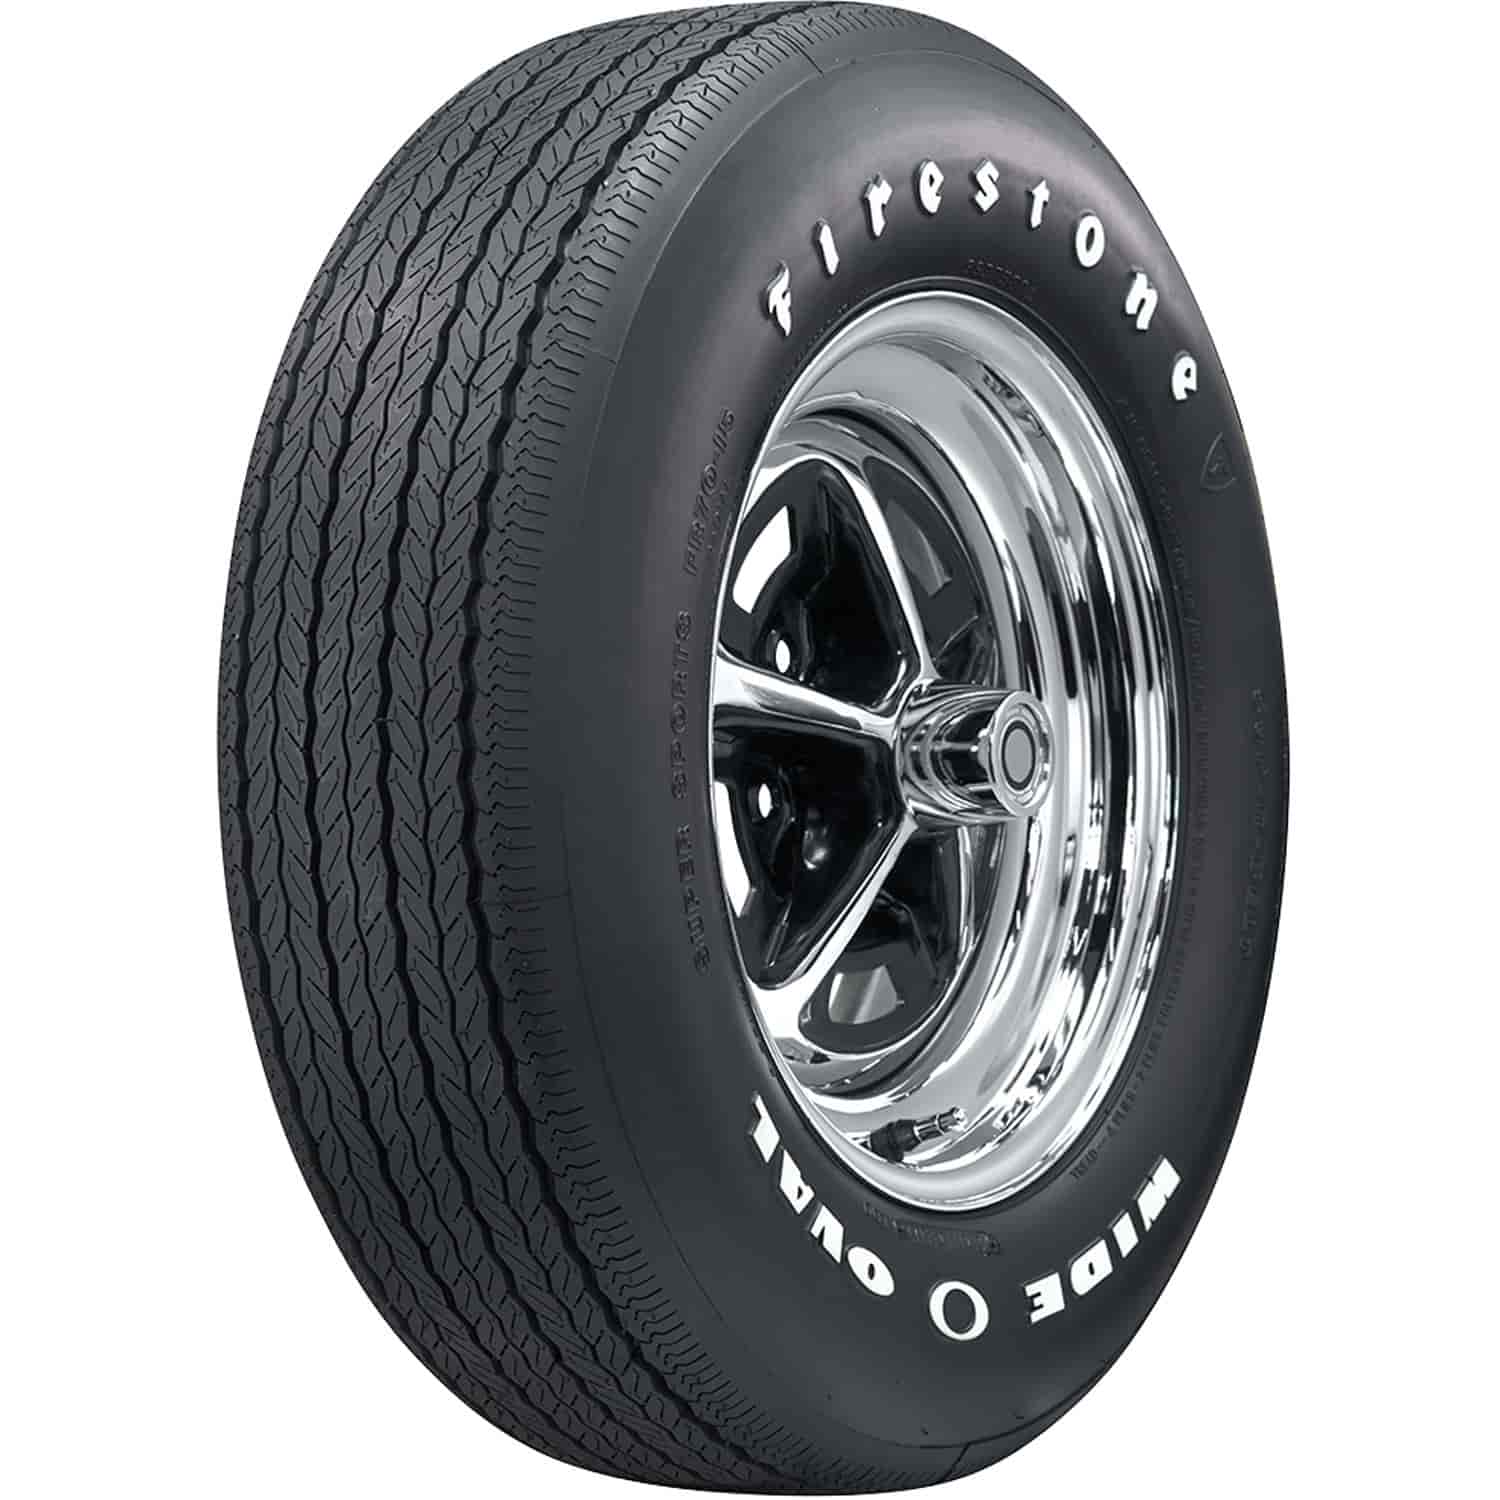 Firestone Wide Oval Radial Tire FR70-15